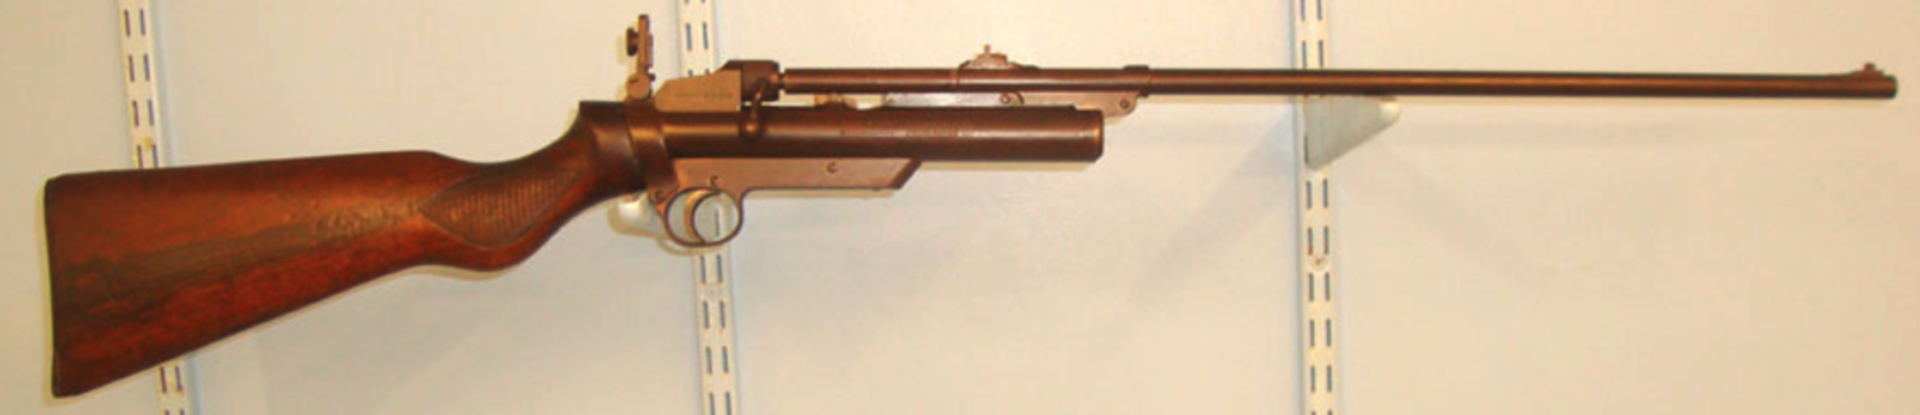 1930's 3rd Series Webley Service MK II .22 Calibre Air Rifle